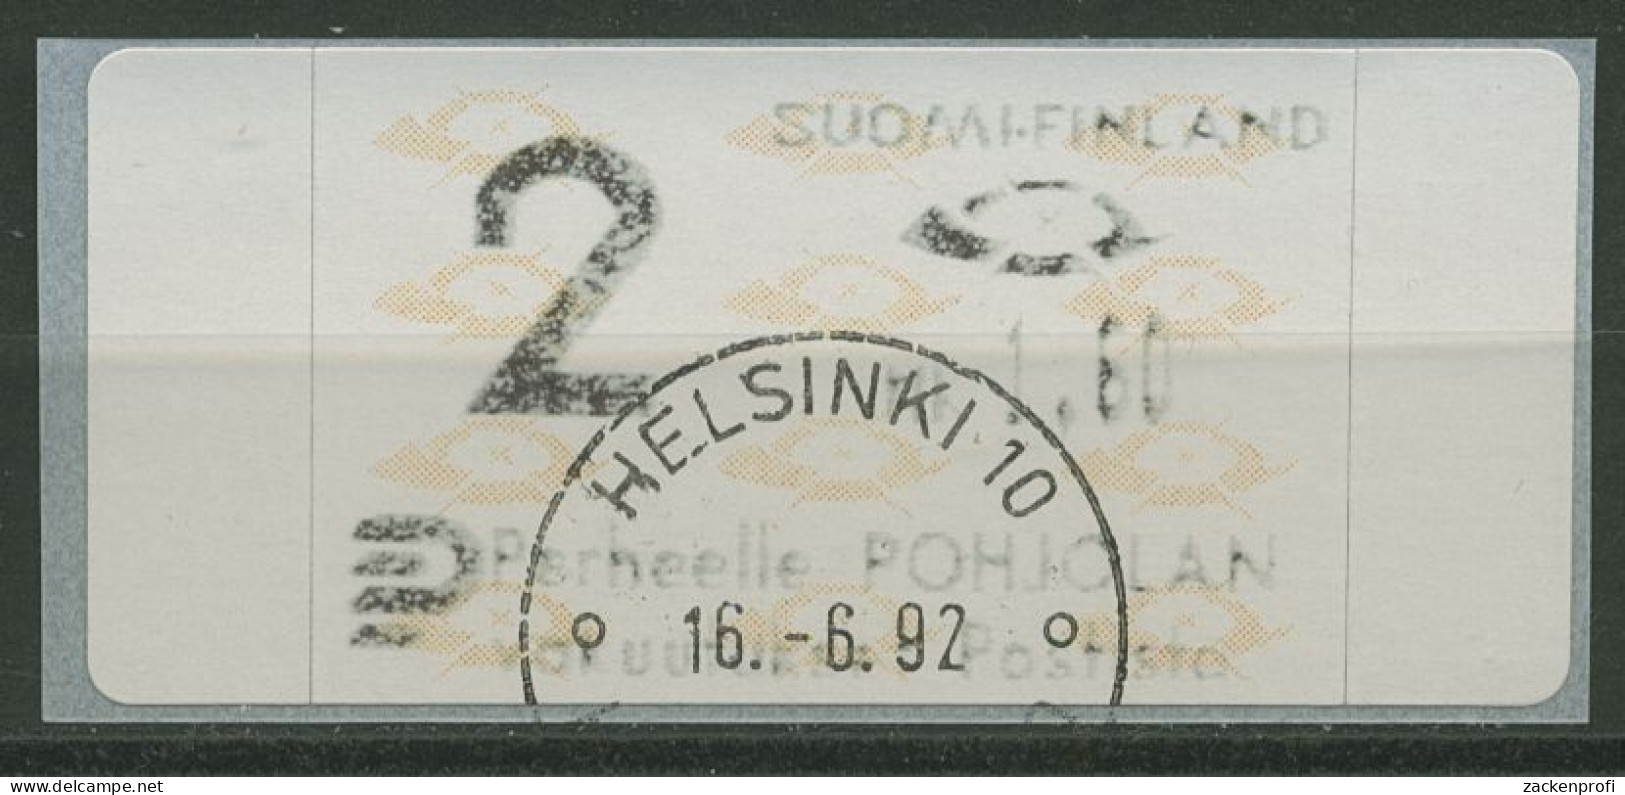 Finnland Automatenmarken 1992 Posthörner Einzelwert ATM 12.3 Z2 Gestempelt - Vignette [ATM]